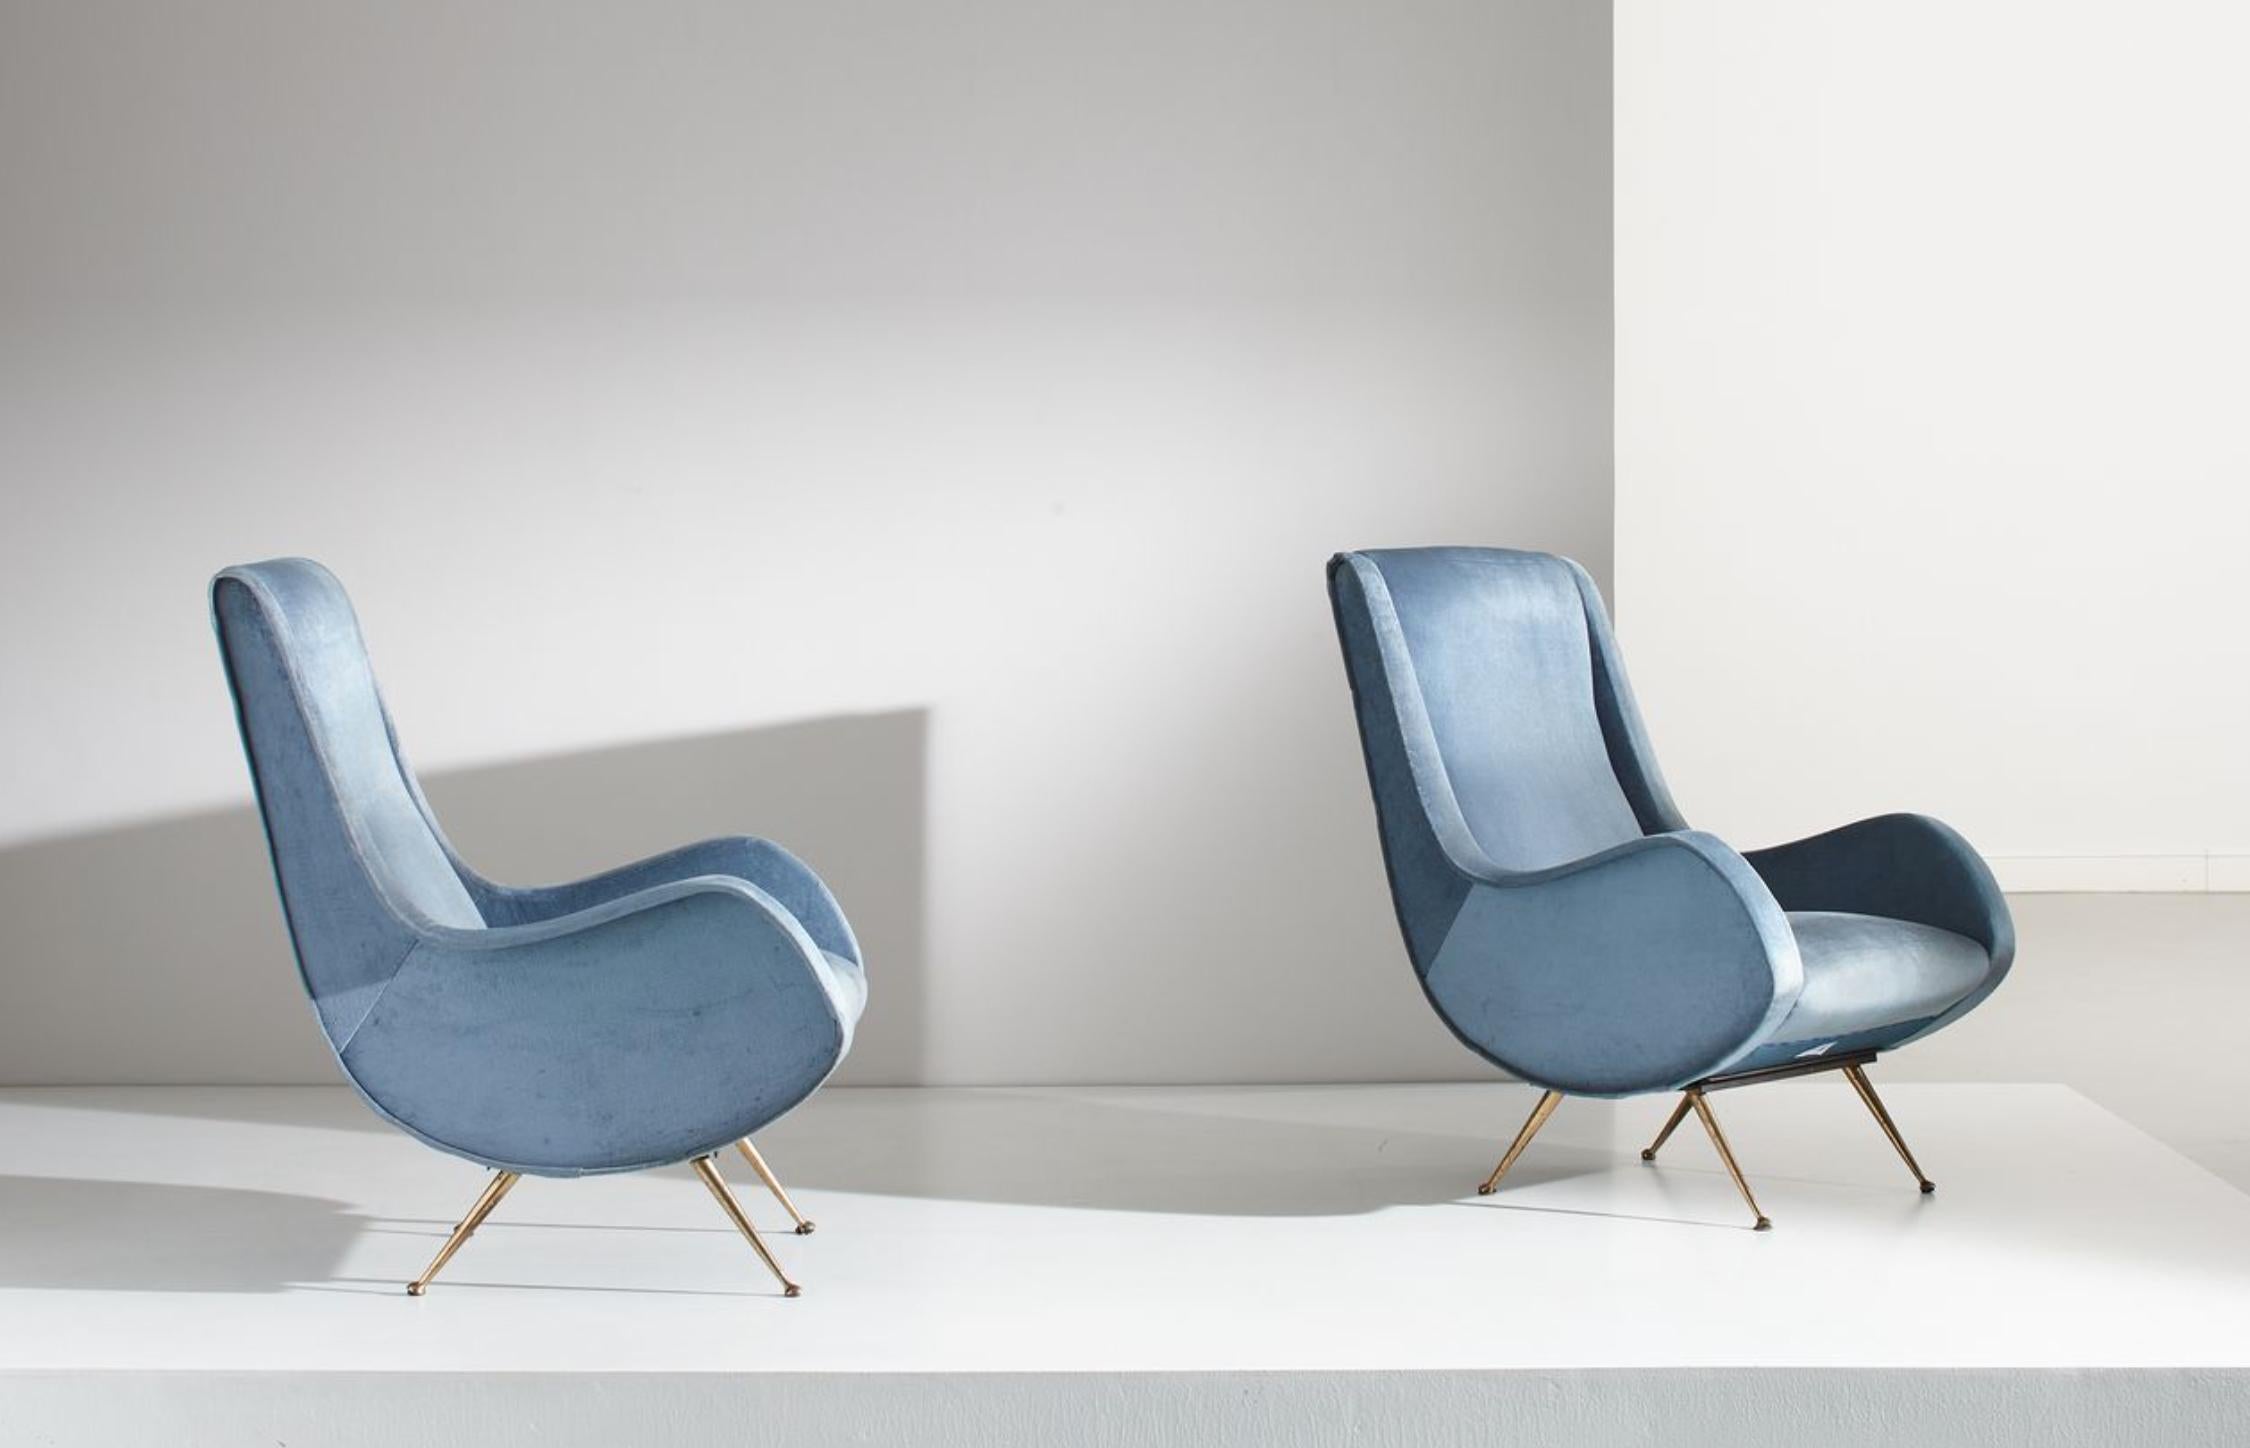 Paire de fauteuils italiens vintage bleu clair d'Aldo Morbelli tapissés de velours.
Très bon état, sans restaurations.
Italie, vers 1950.